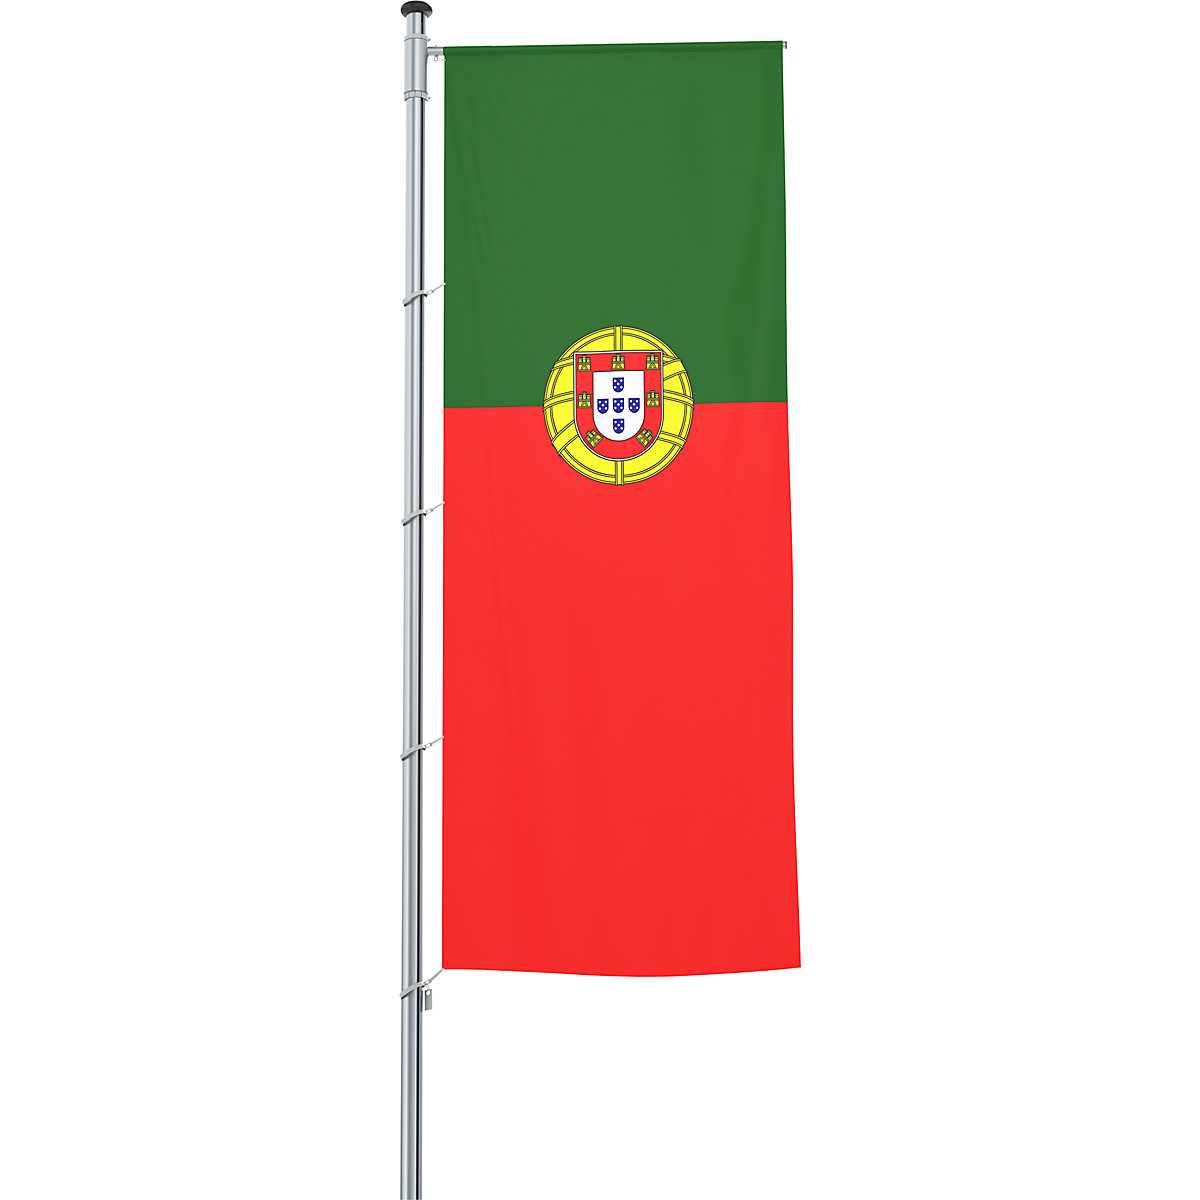 Vlajka na pozdĺžne upevnenie na stožiar/národná vlajka – Mannus, formát 1,2 x 3 m, Portugalsko-16